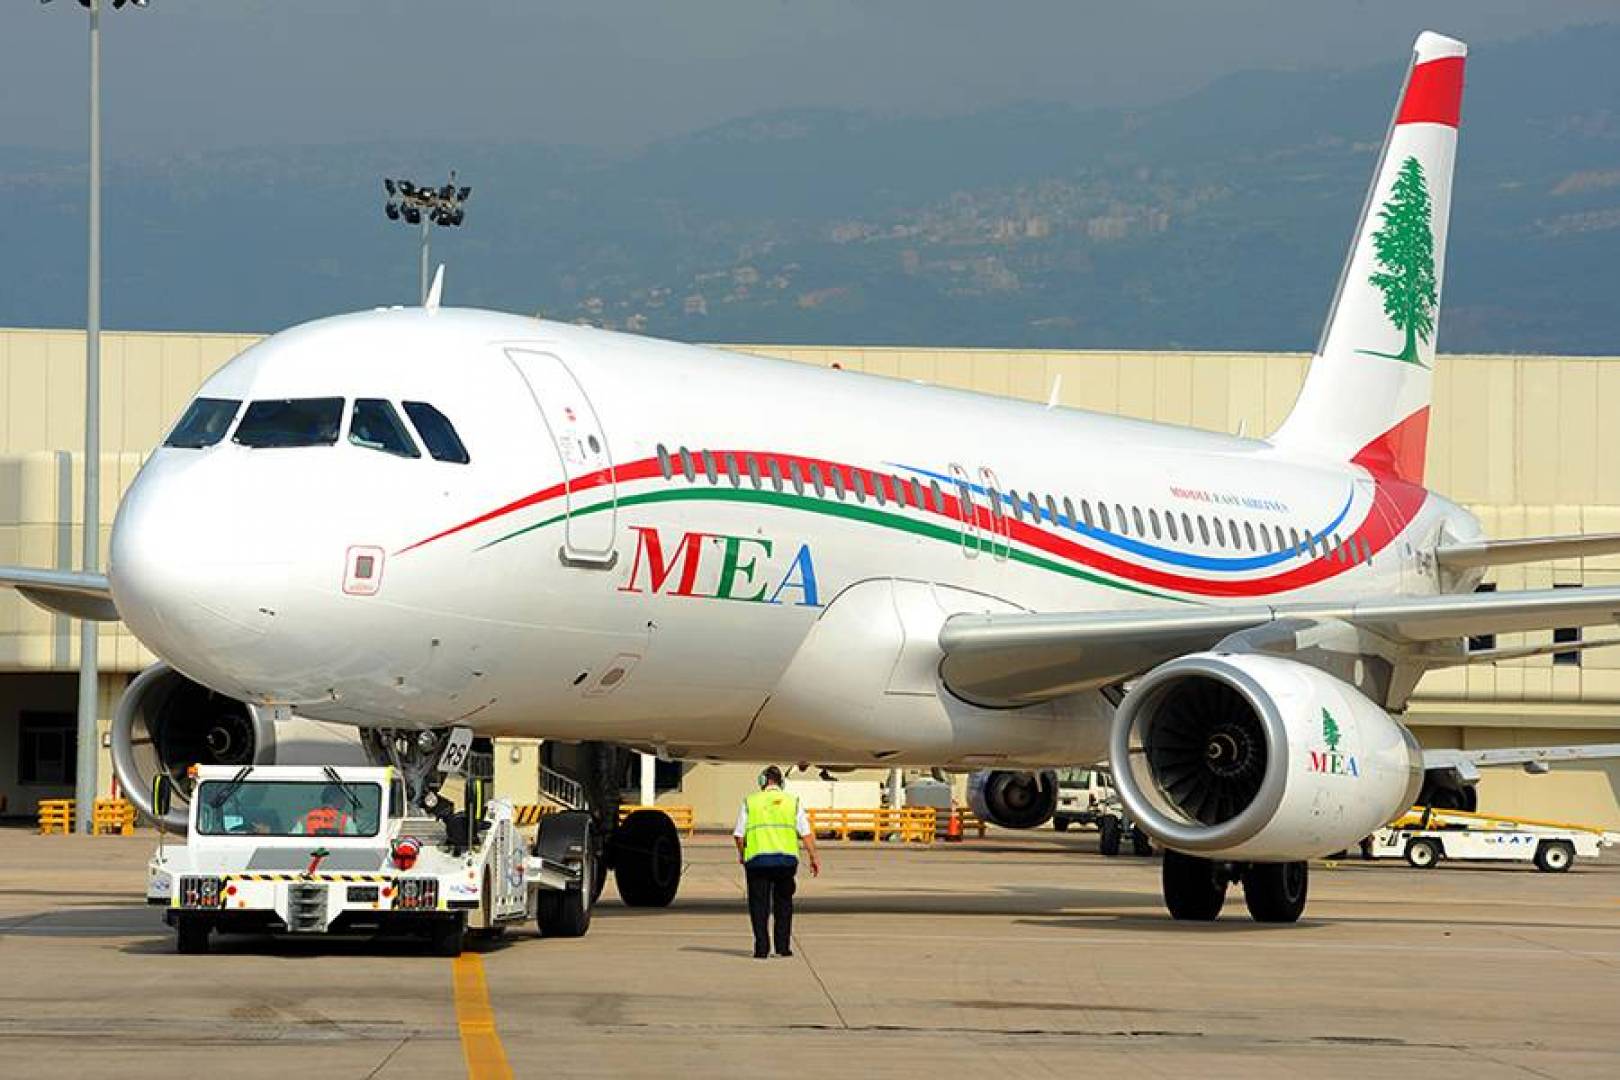 المدير العام لطيران الشرق الأوسط:لا تعليق لحركة الملاحة في مطار بيروت الدولي